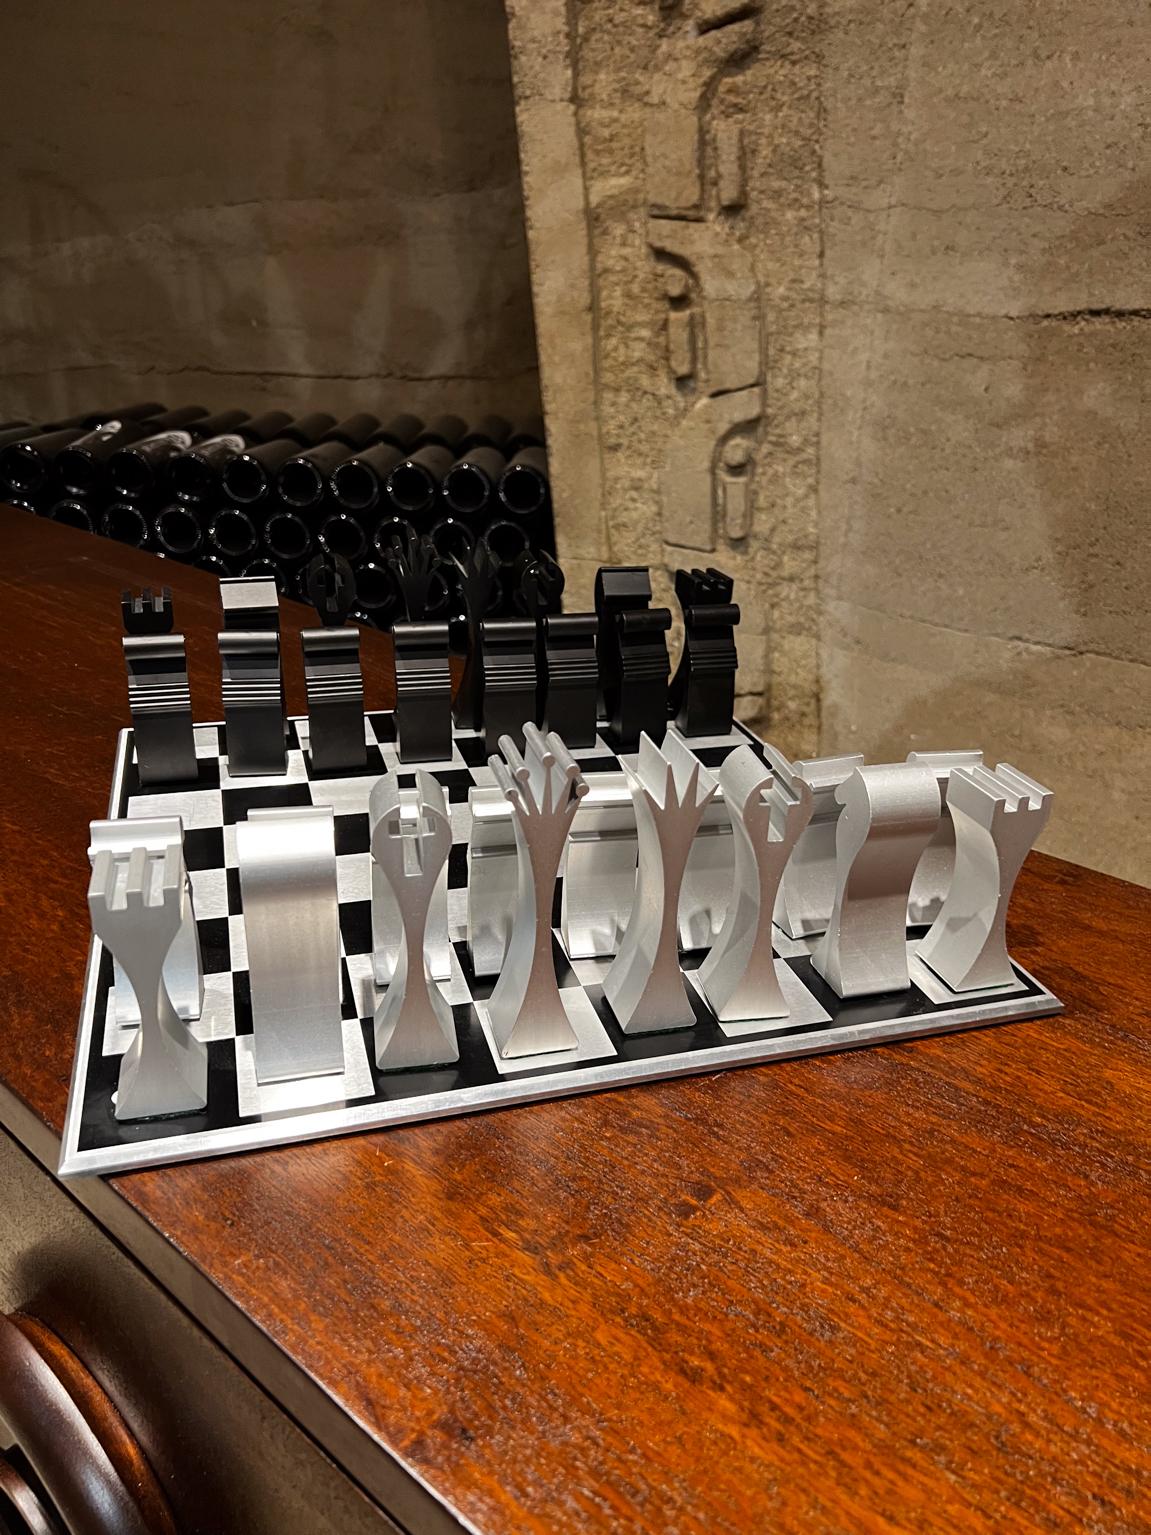 aluminium chess set